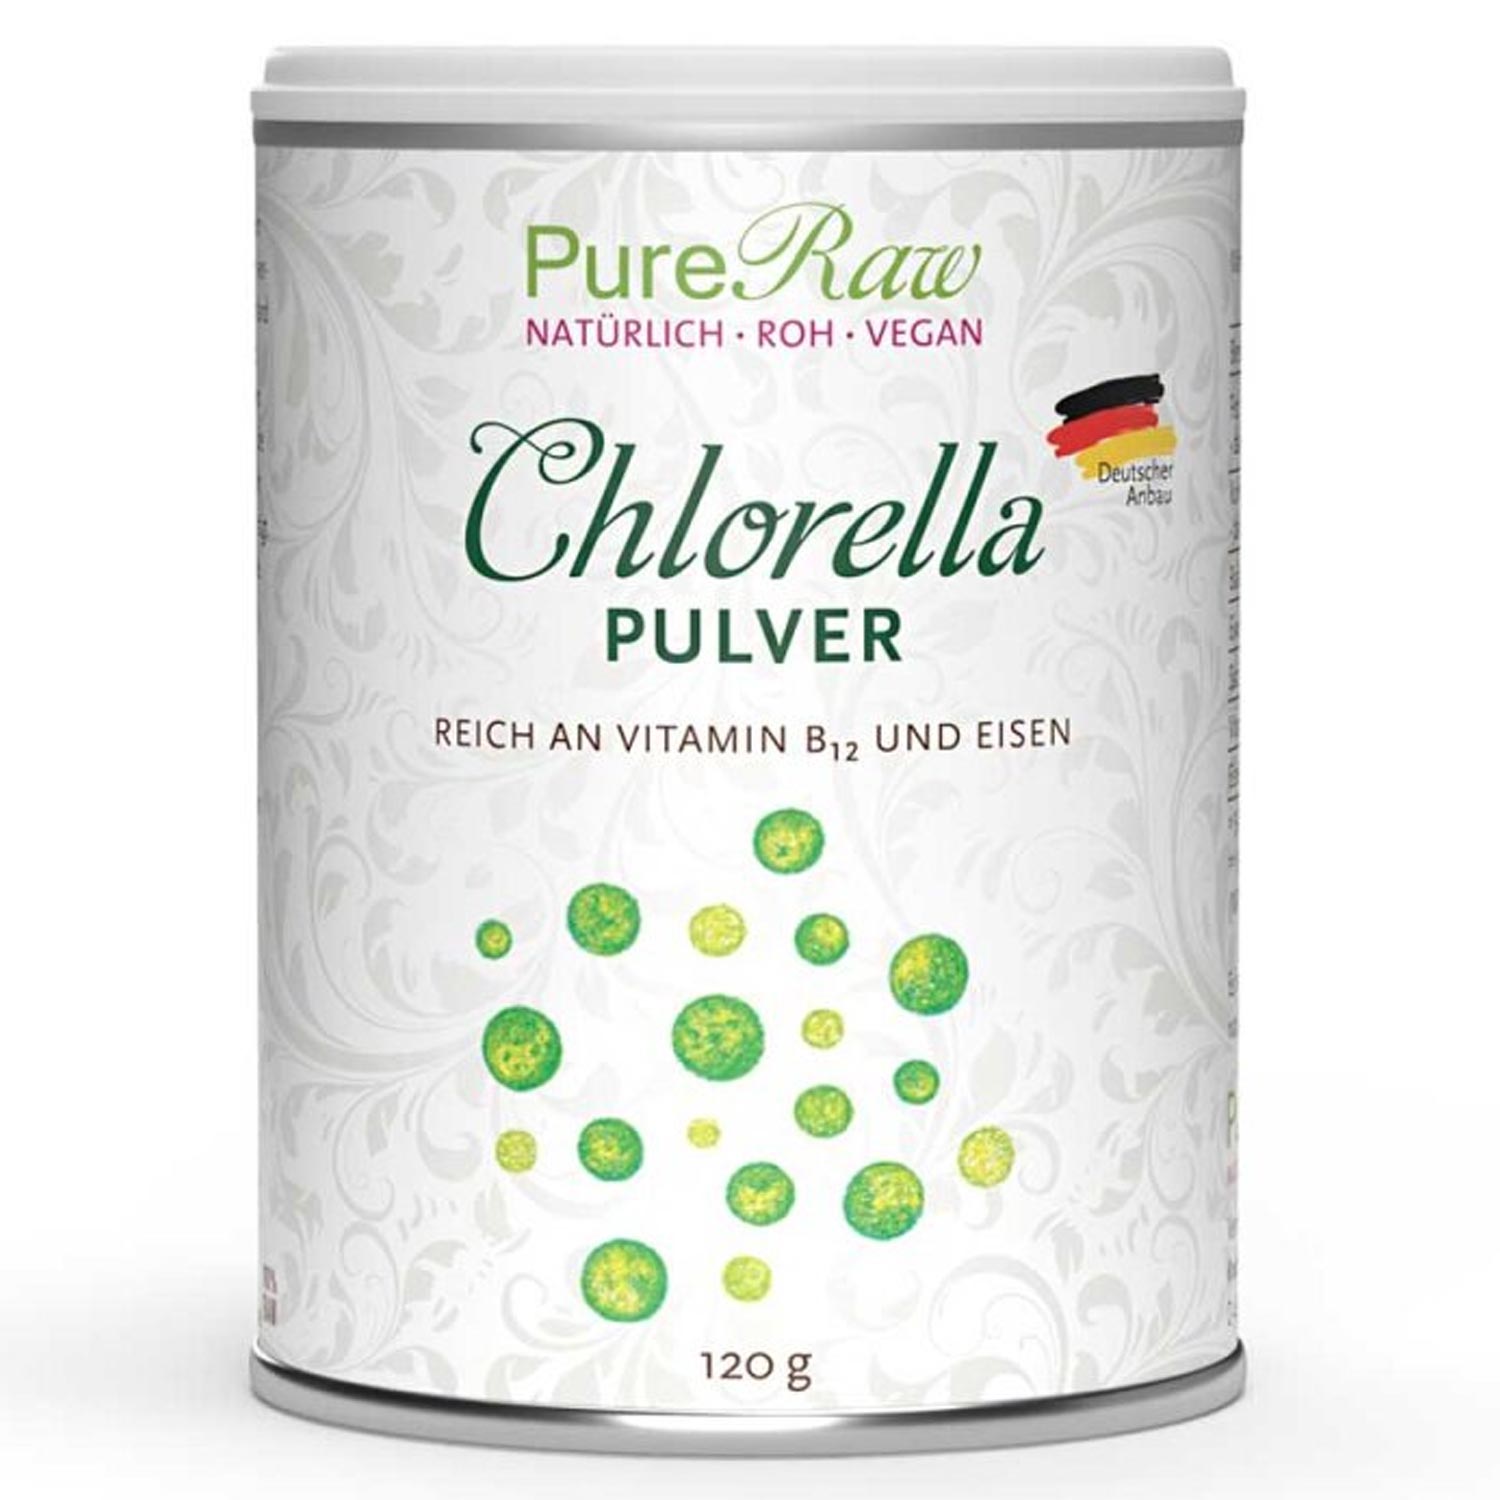 Chlorella Algen Pulver von PureRaw -120g